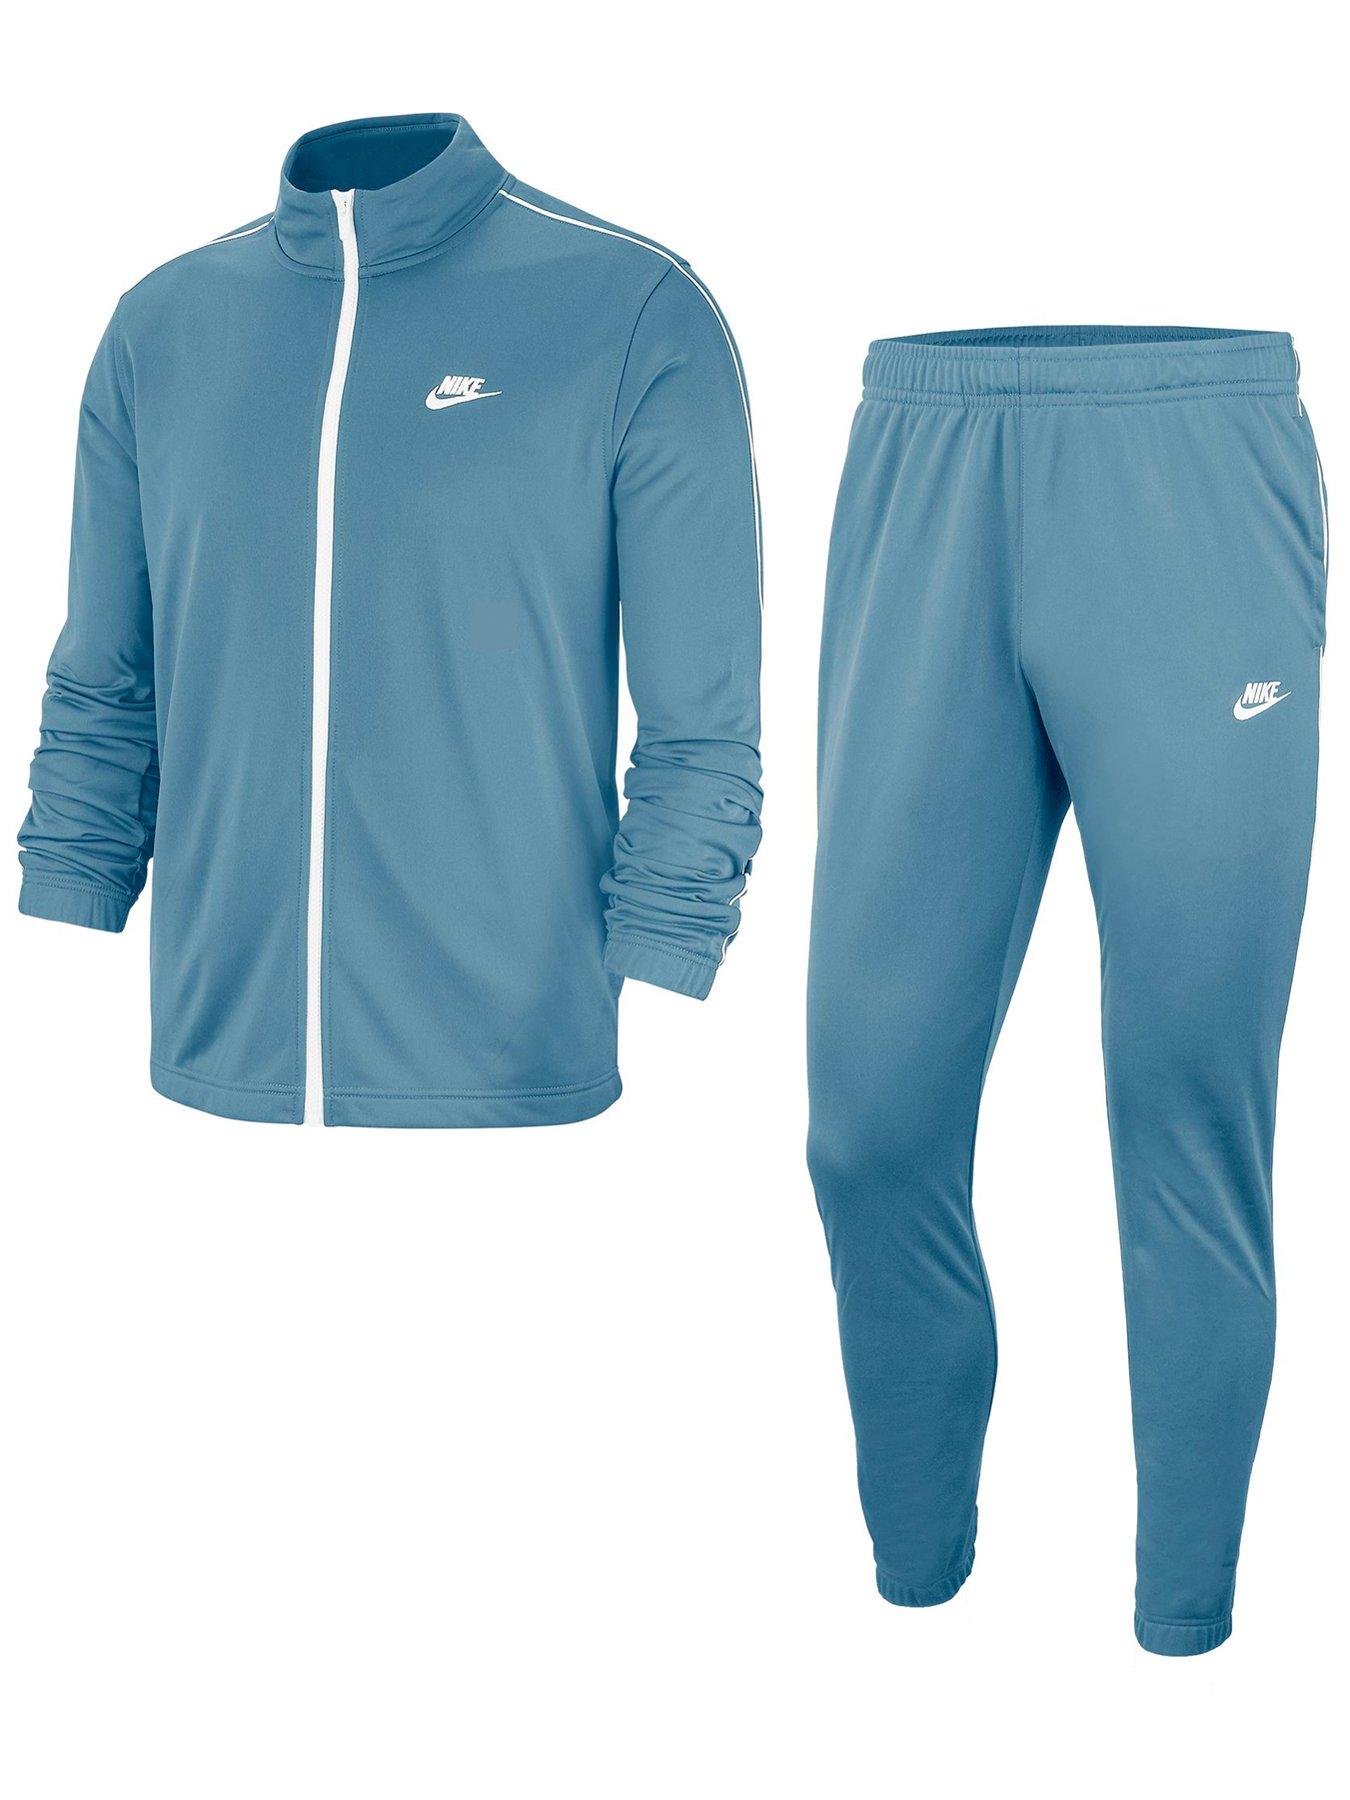 Nike Tracksuit - Blue/White | very.co.uk